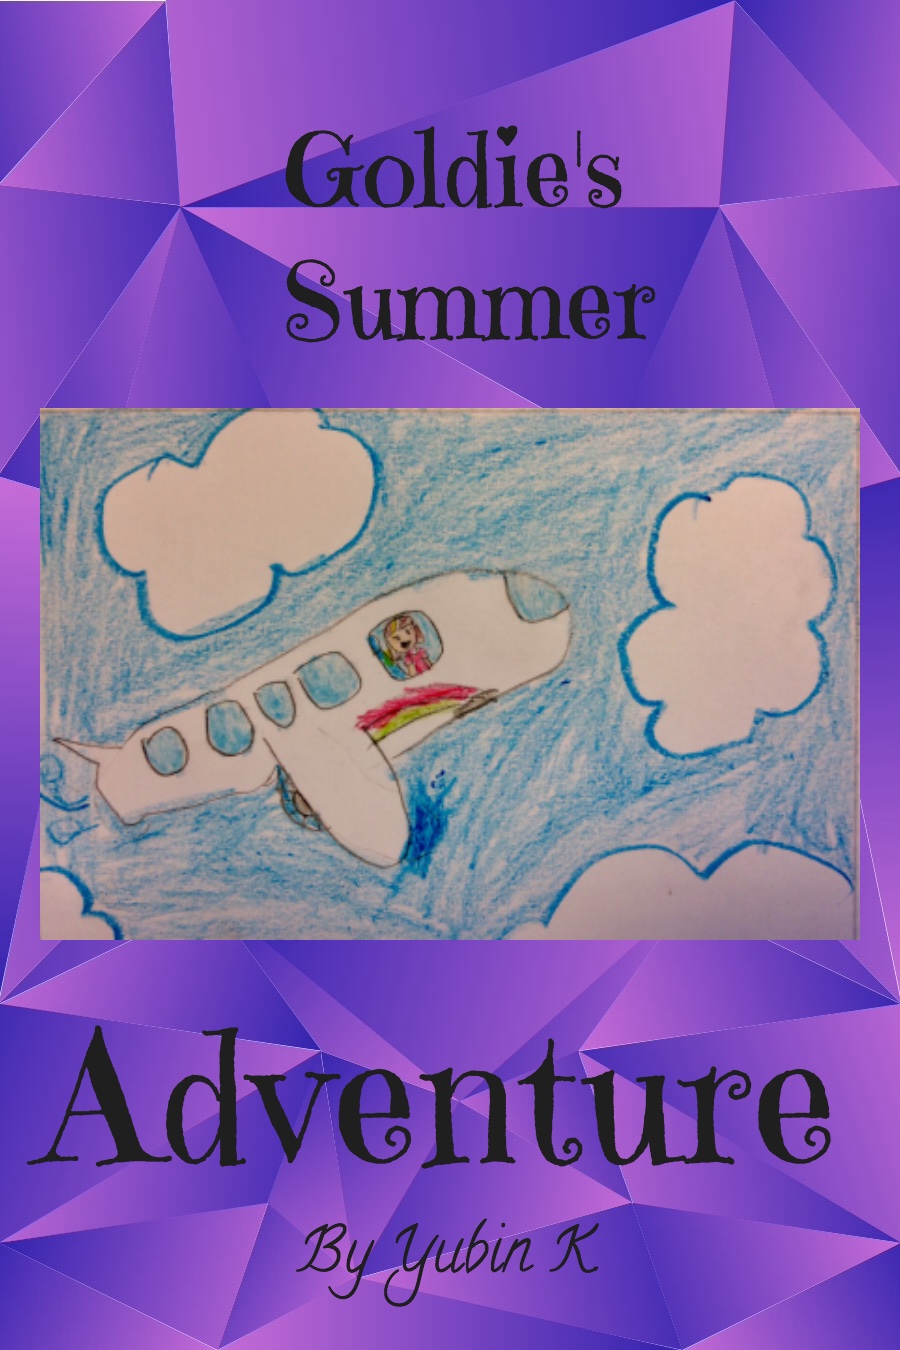 Goldie’s Summer Adventure by Yubin K